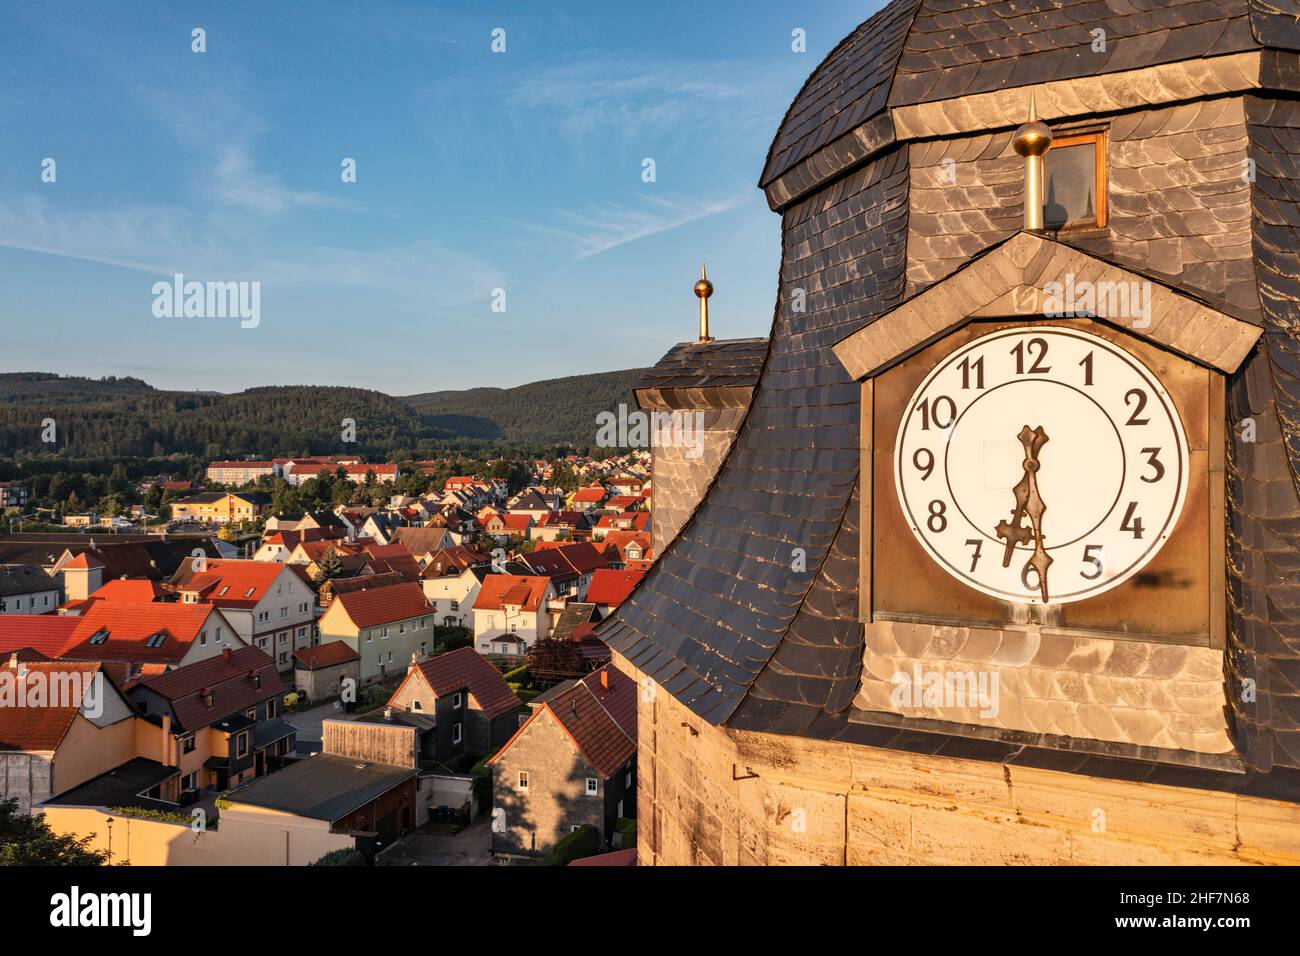 Allemagne, Thuringe, communauté rurale Geratal, Graefenroda, horloge de l'église,village, maisons Banque D'Images